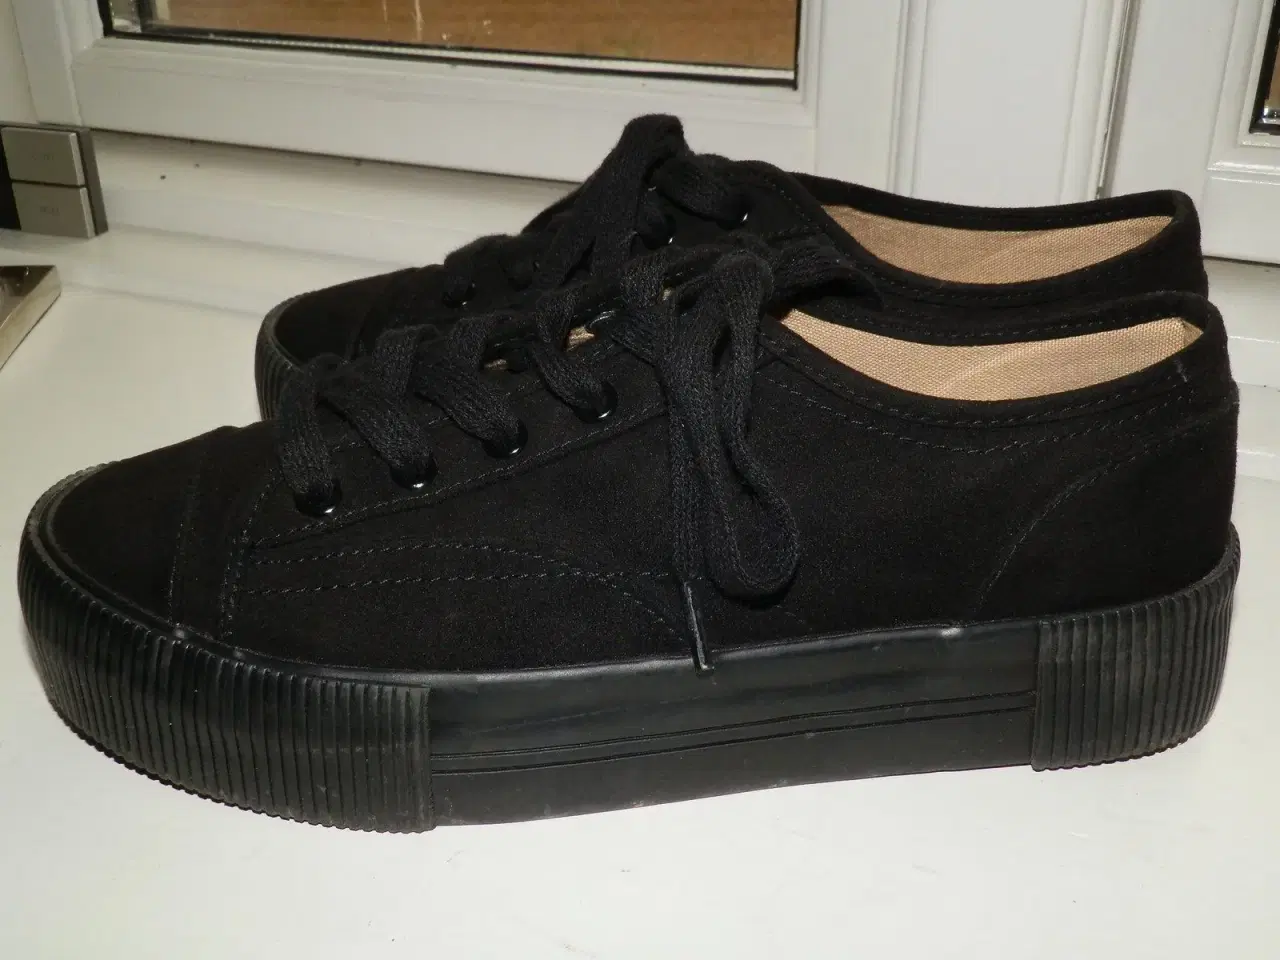 Billede 4 - Nye sorte og meget fede sneakers!